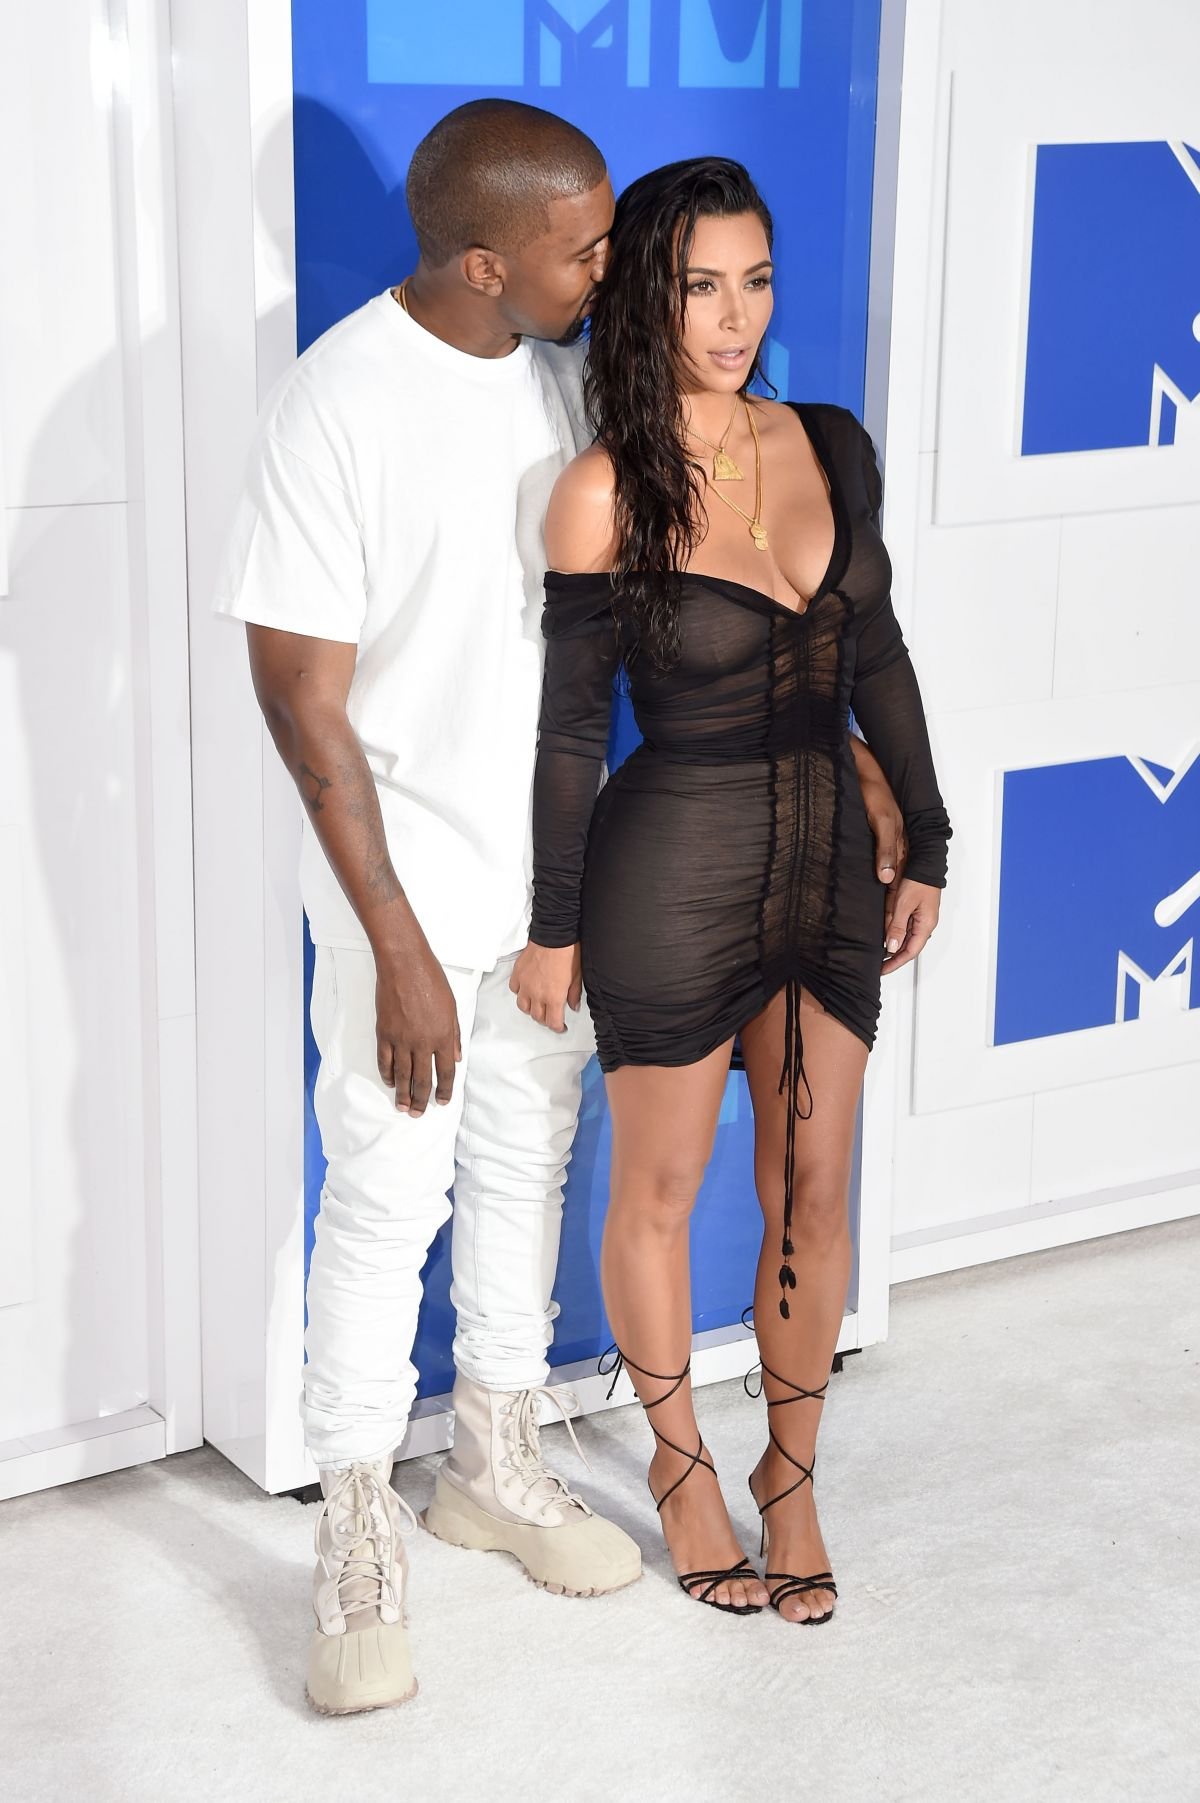 Ким Кардашьян выбрала очень откровенный наряд для MTV Video Music Awards 2016